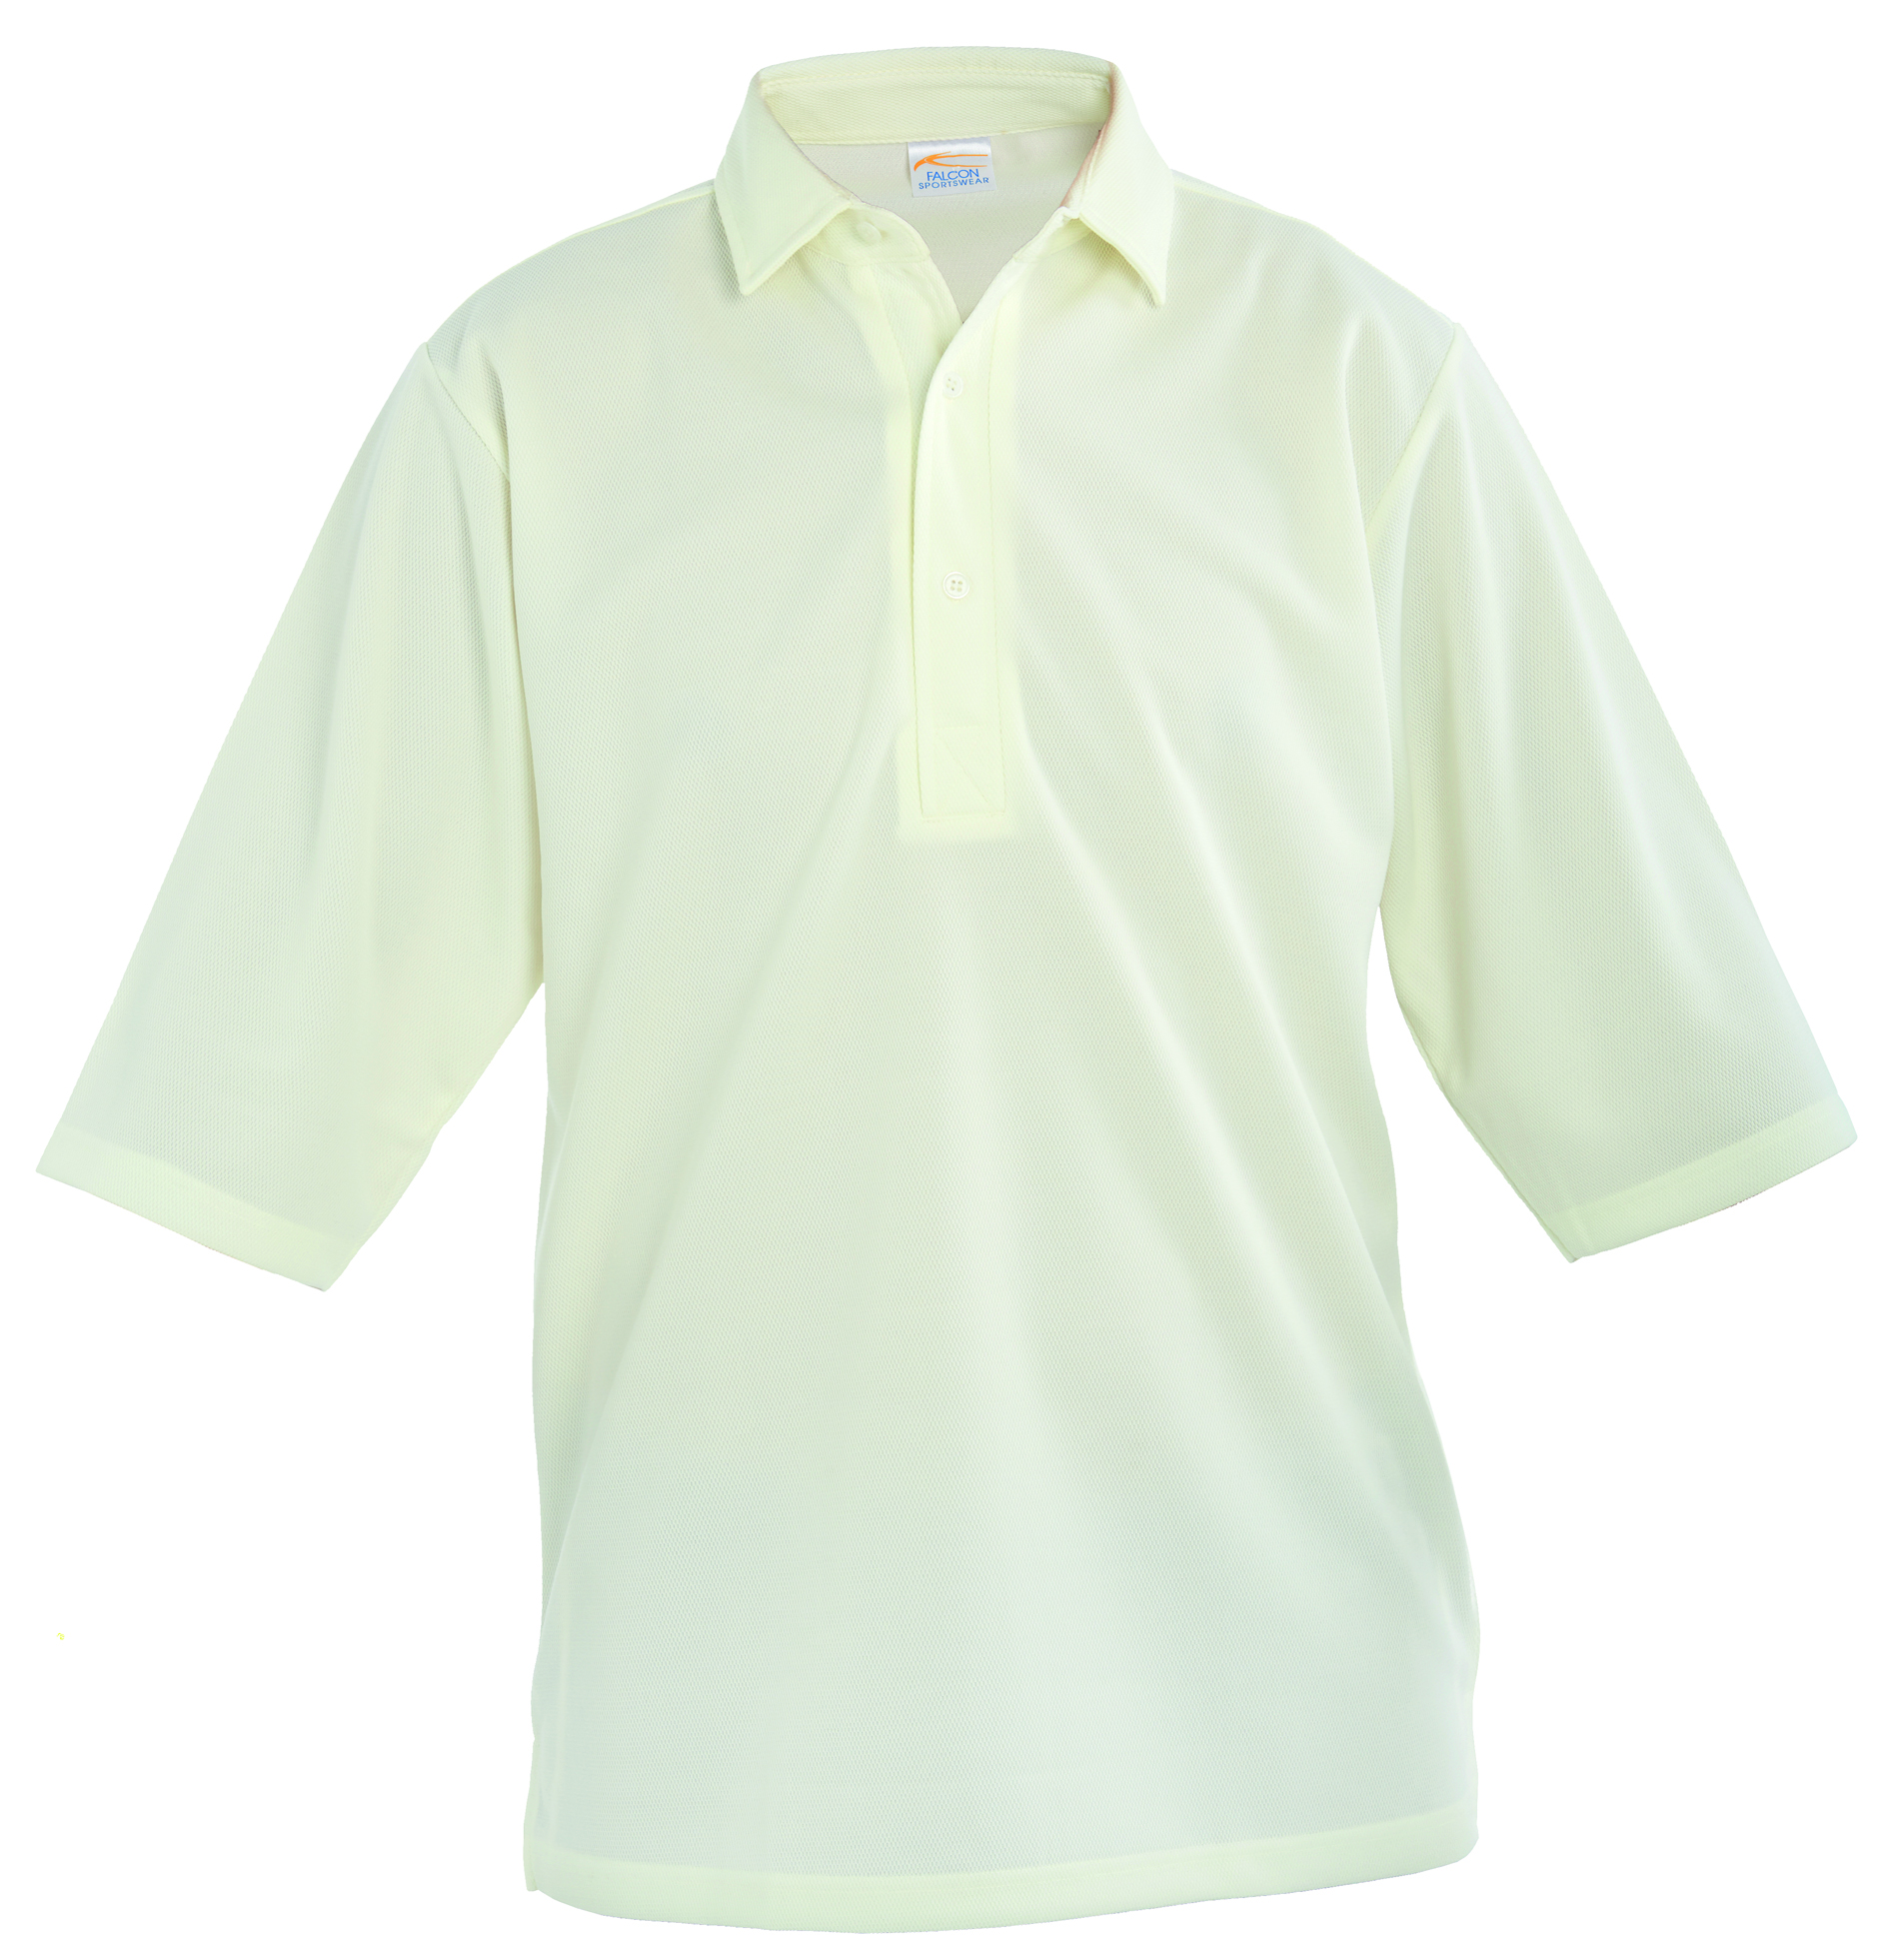 Cricket Shirt Plain 1/2 Length Sleeve